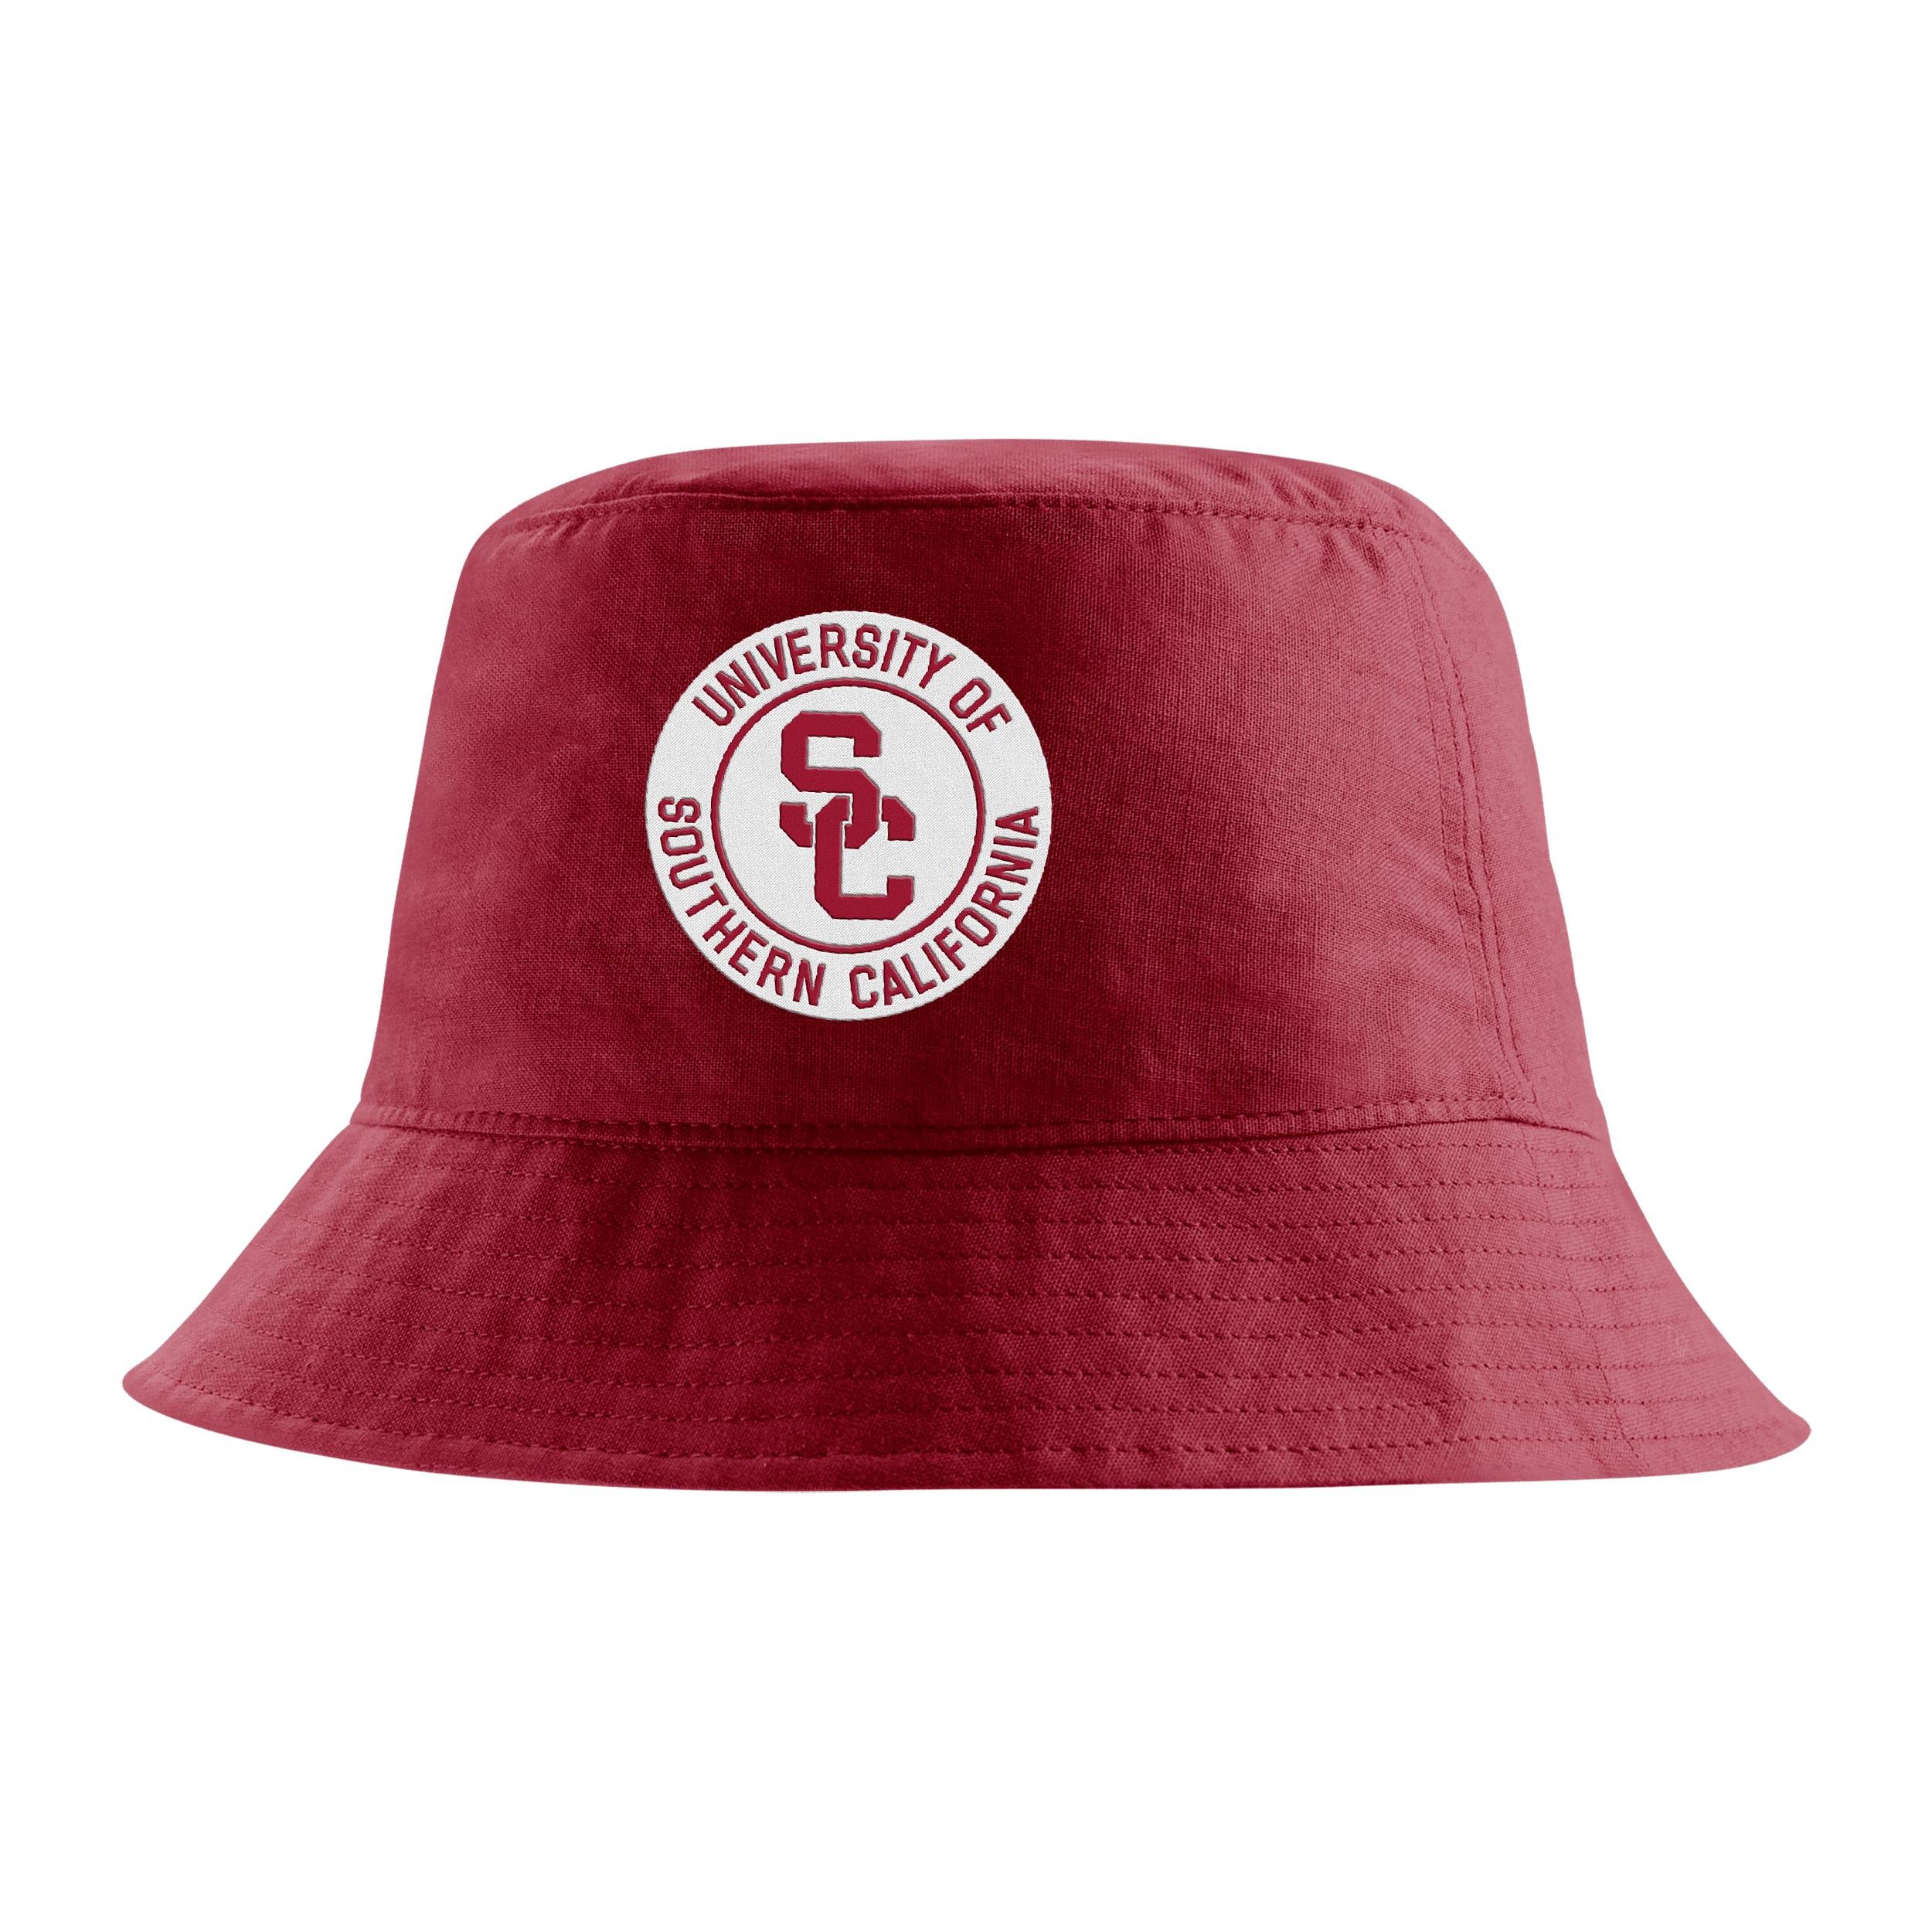 USC Nike Unisex College Bucket Hat by NIKE